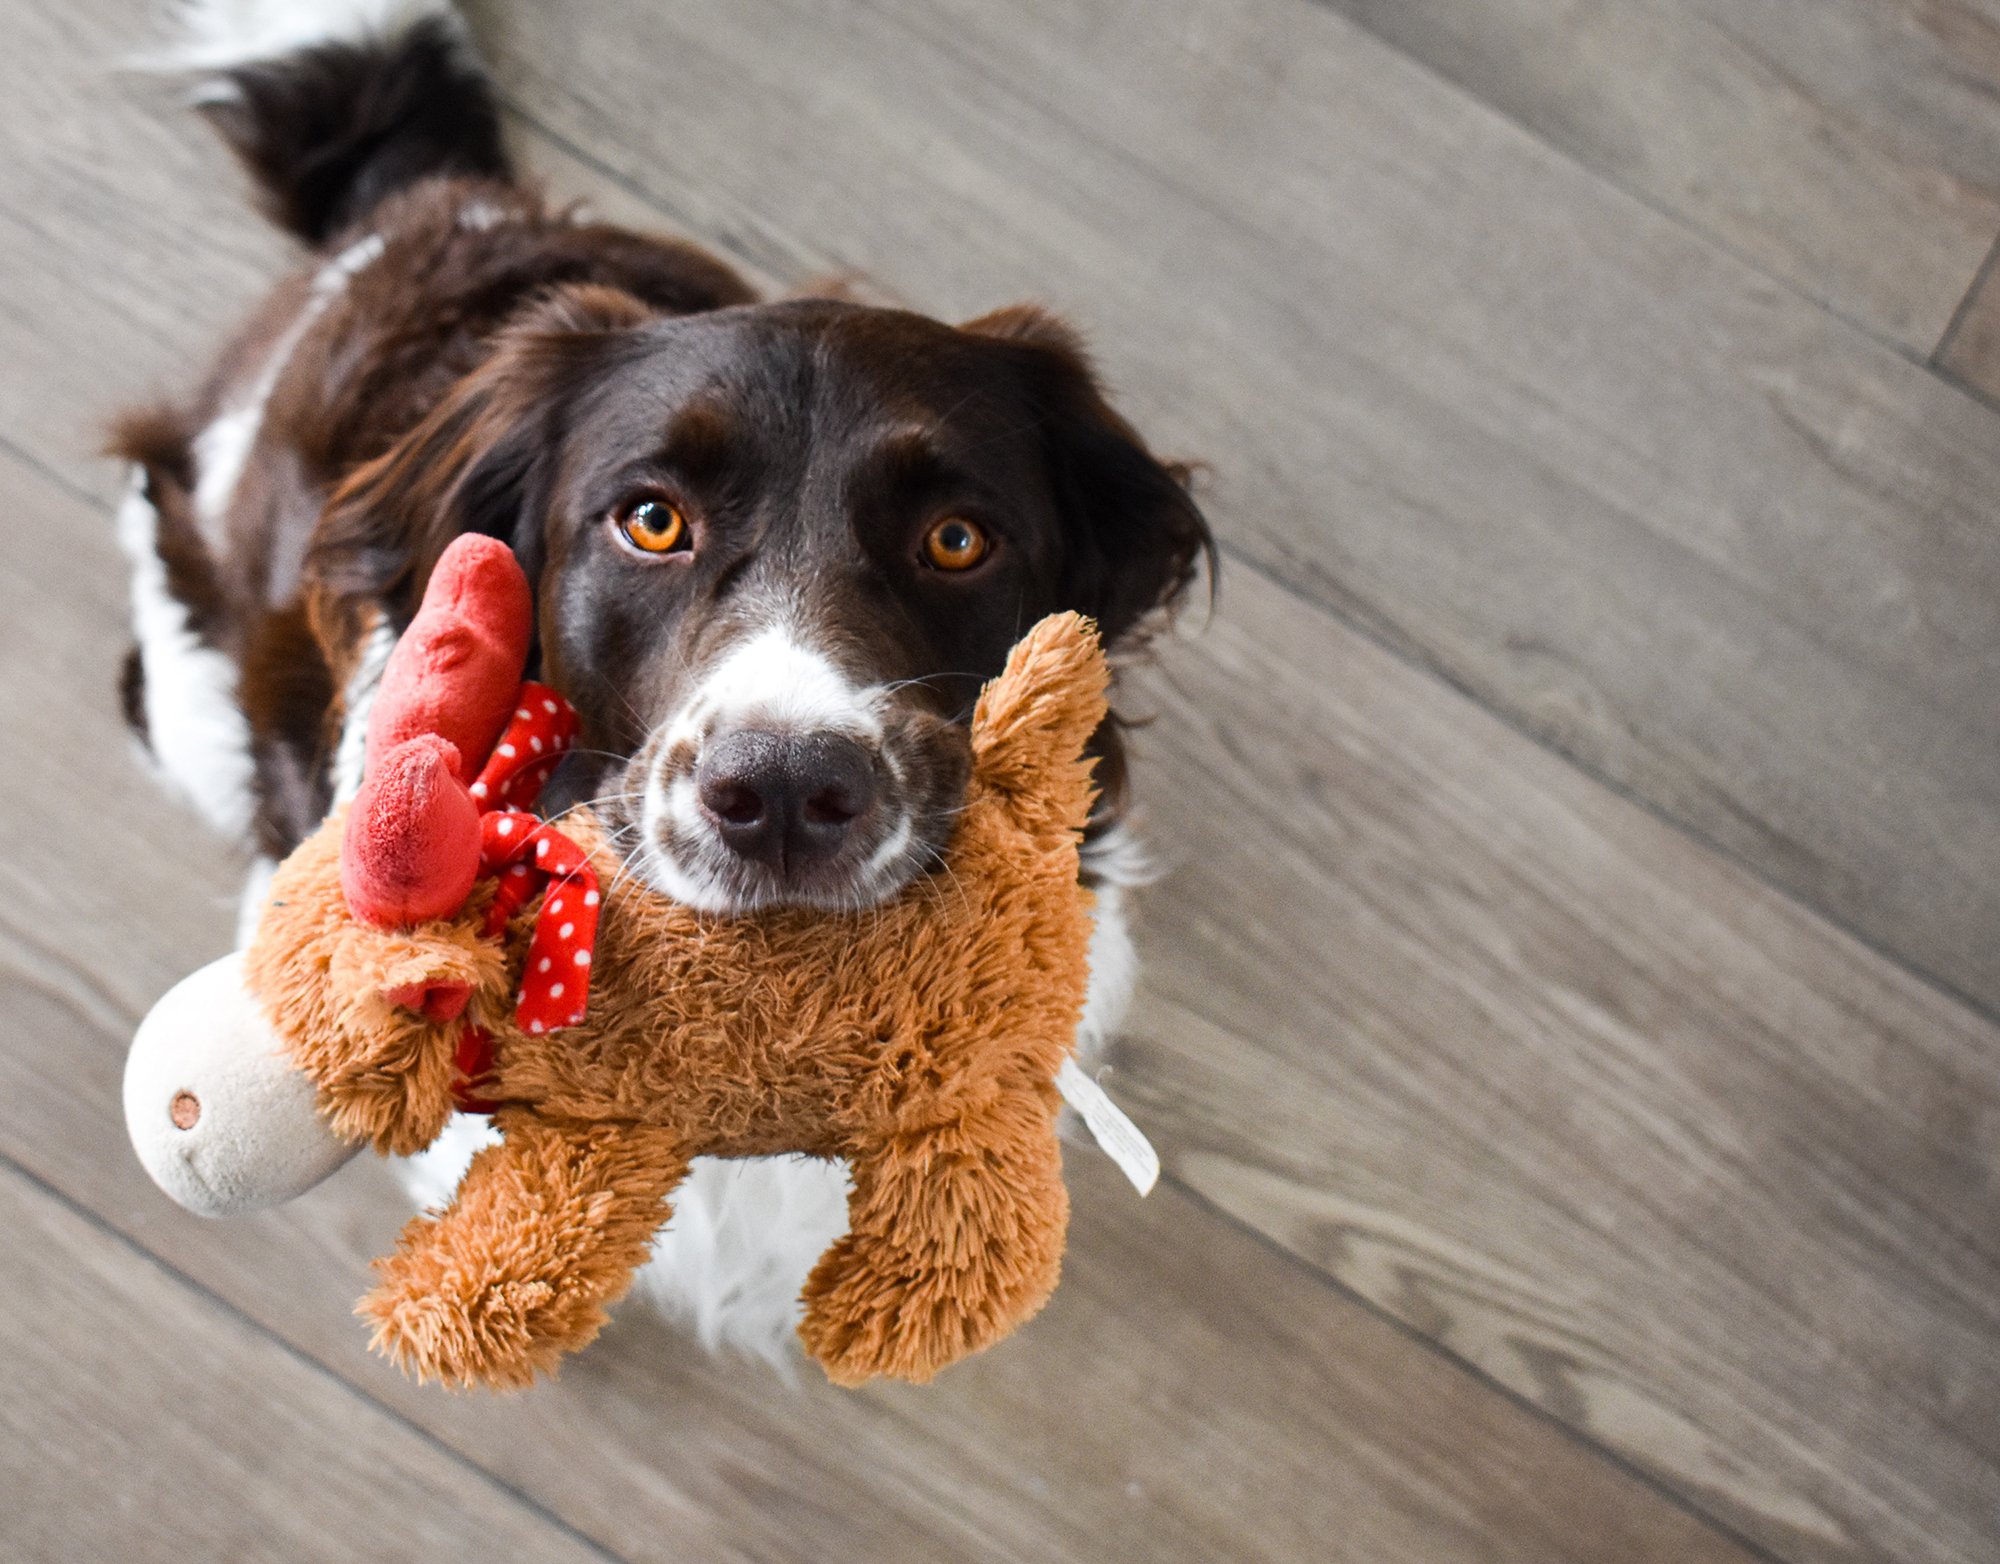 Álvemhesség kutyáknál - a játékok begyűjtése tipikus jel